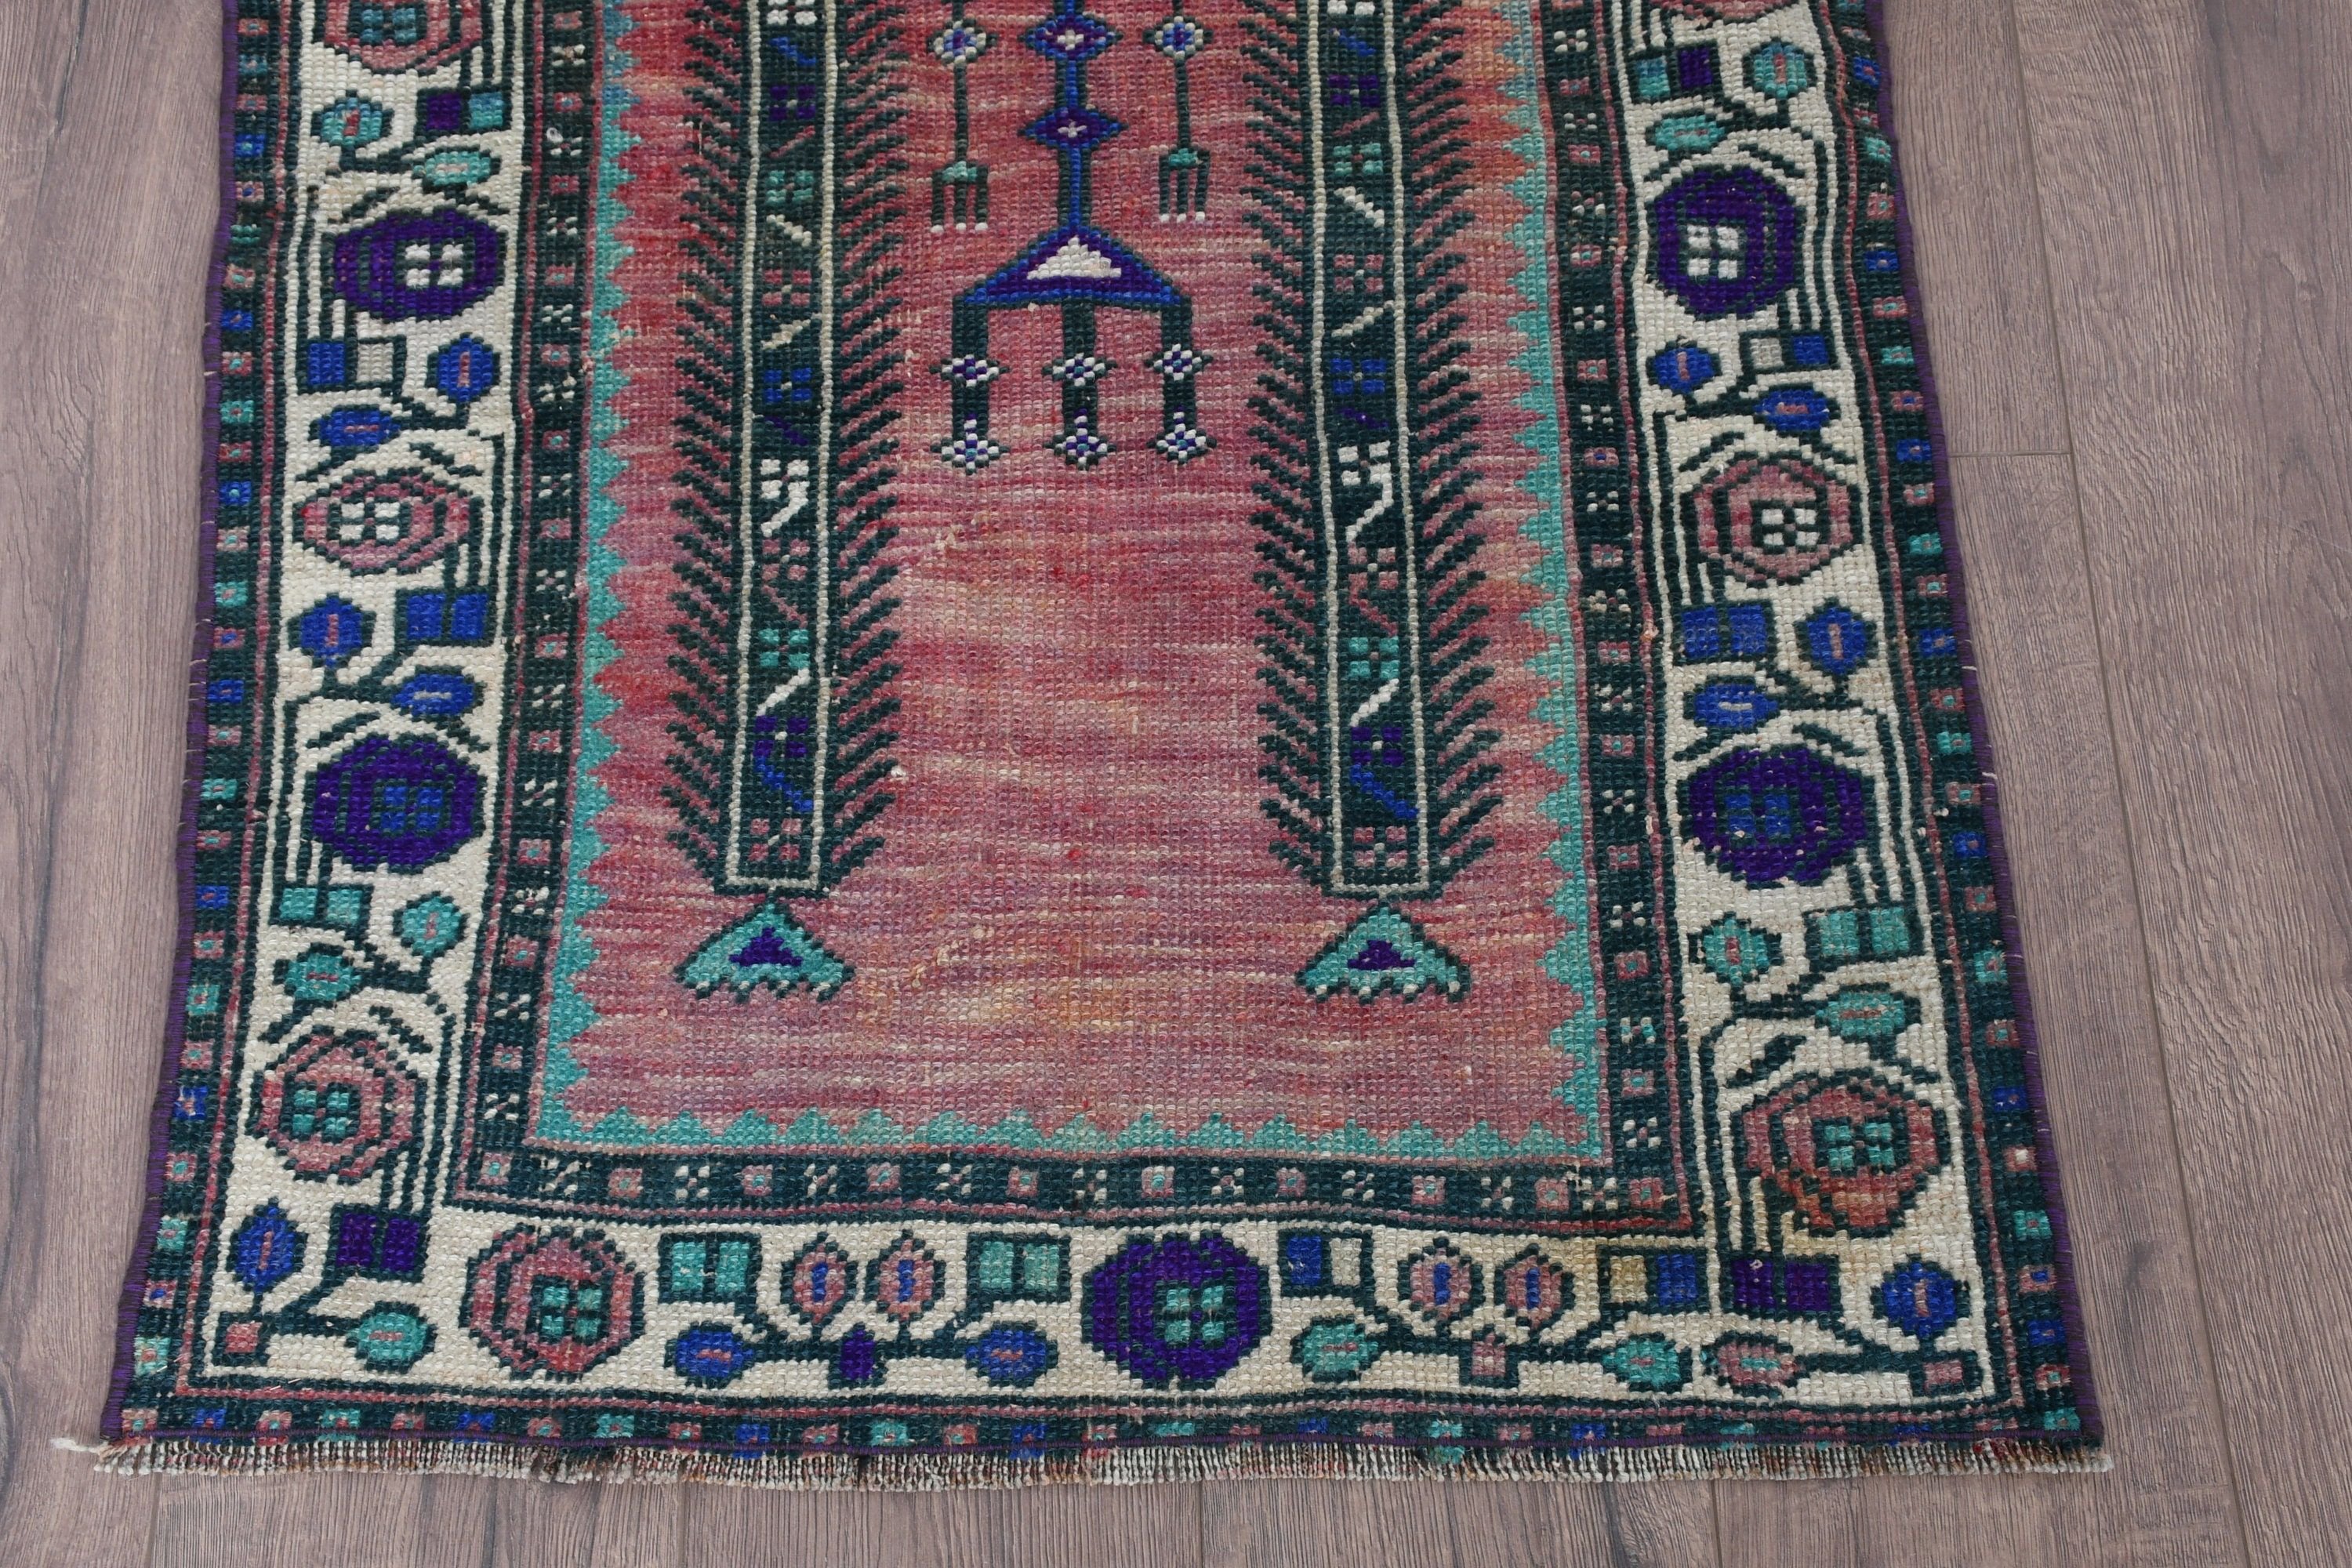 Anatolian Rug, Oriental Rug, Rugs for Bedroom, Vintage Rugs, Bathroom Rug, Turkish Rug, Green Floor Rug, Kitchen Rug, 2.4x3.6 ft Small Rug